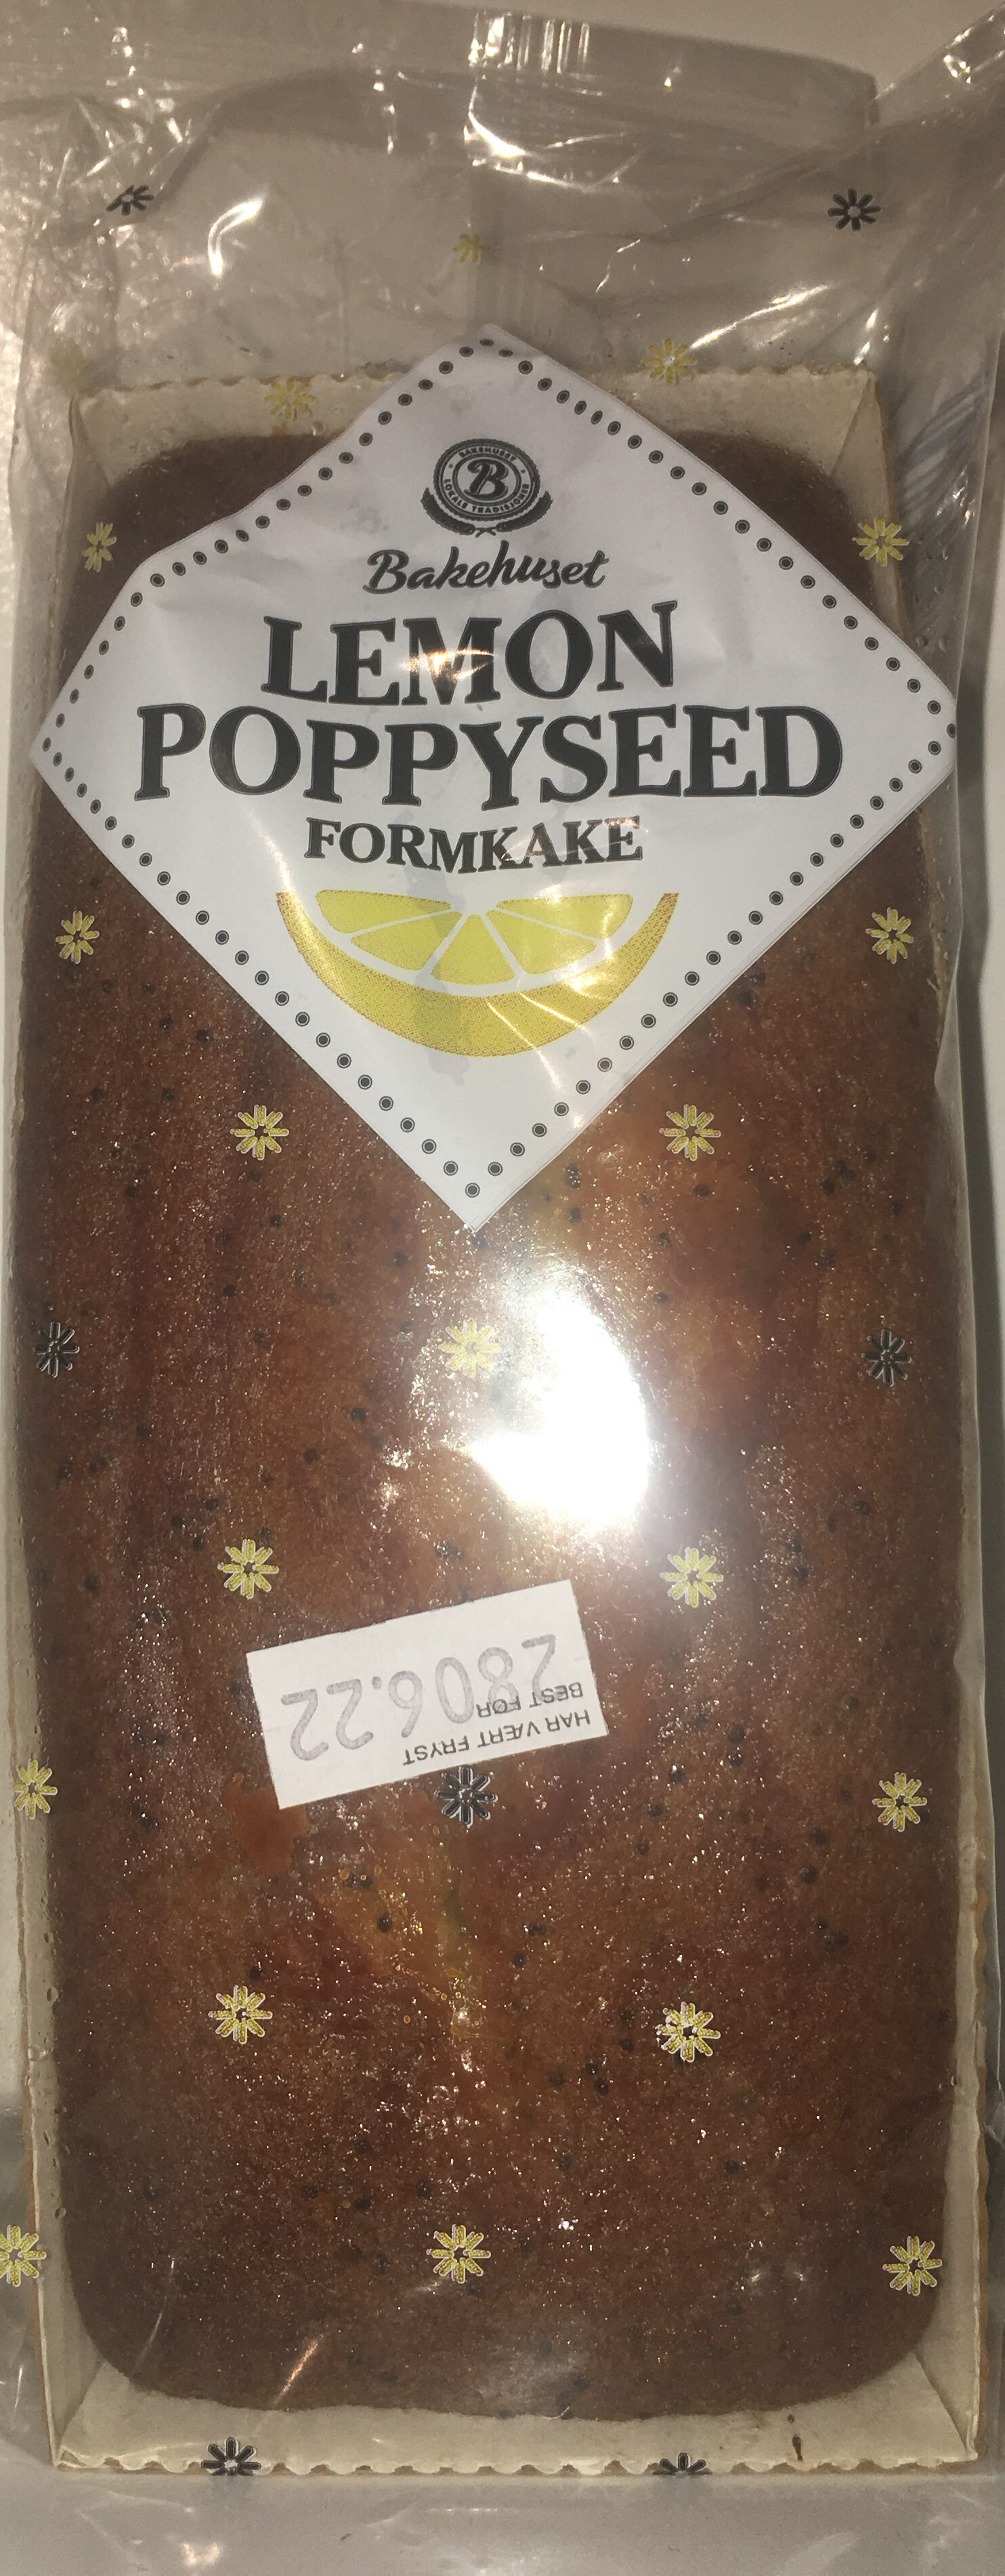 Lemon Poppyseed Formkake - Produkt